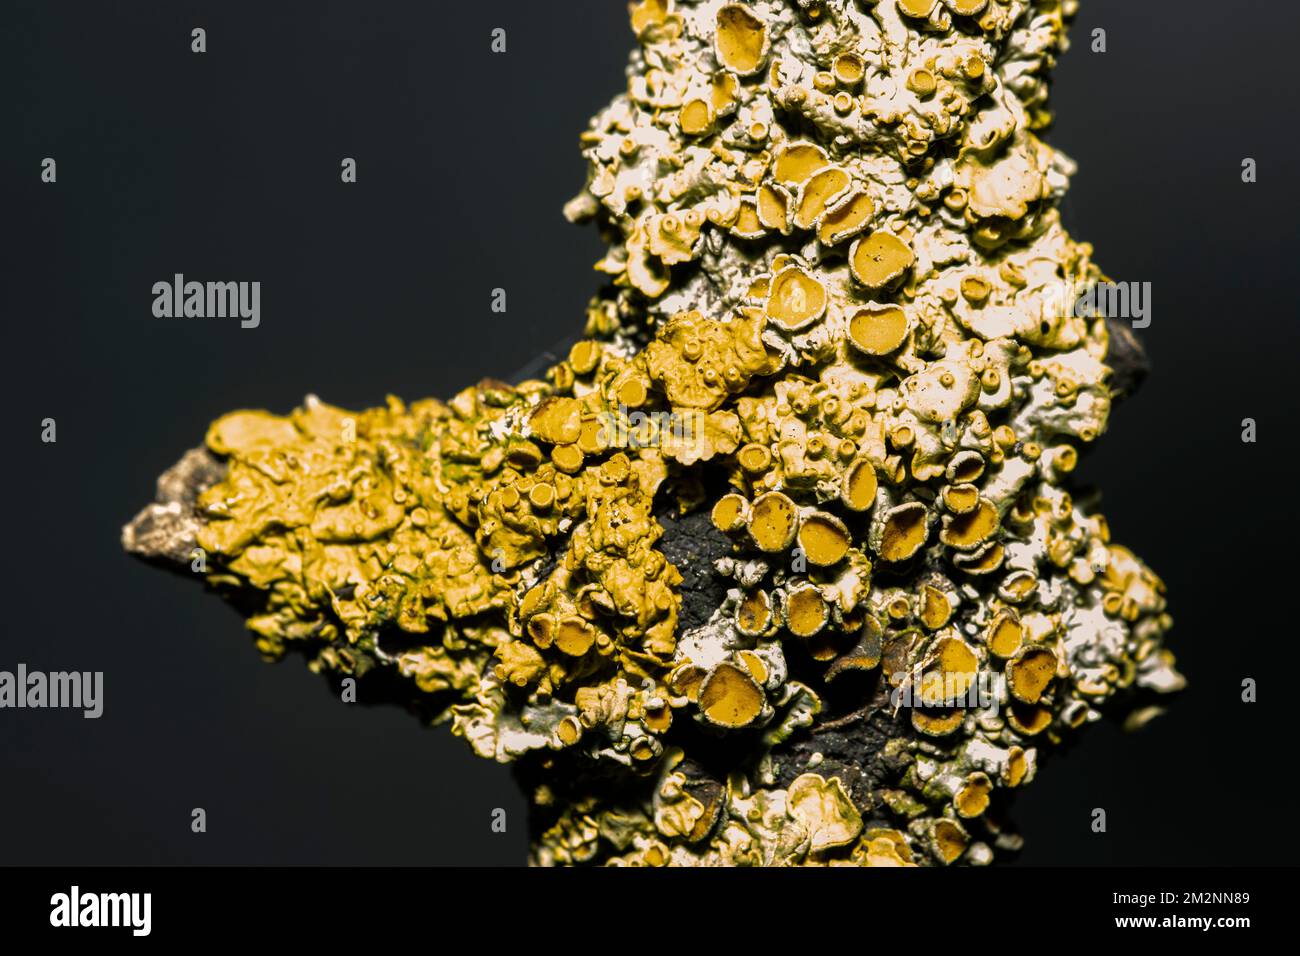 L'une des plus courantes de la famille des lichen, la croûte dorée, est présente sur une large gamme de substrats allant des roches côtières aux brindilles. Banque D'Images